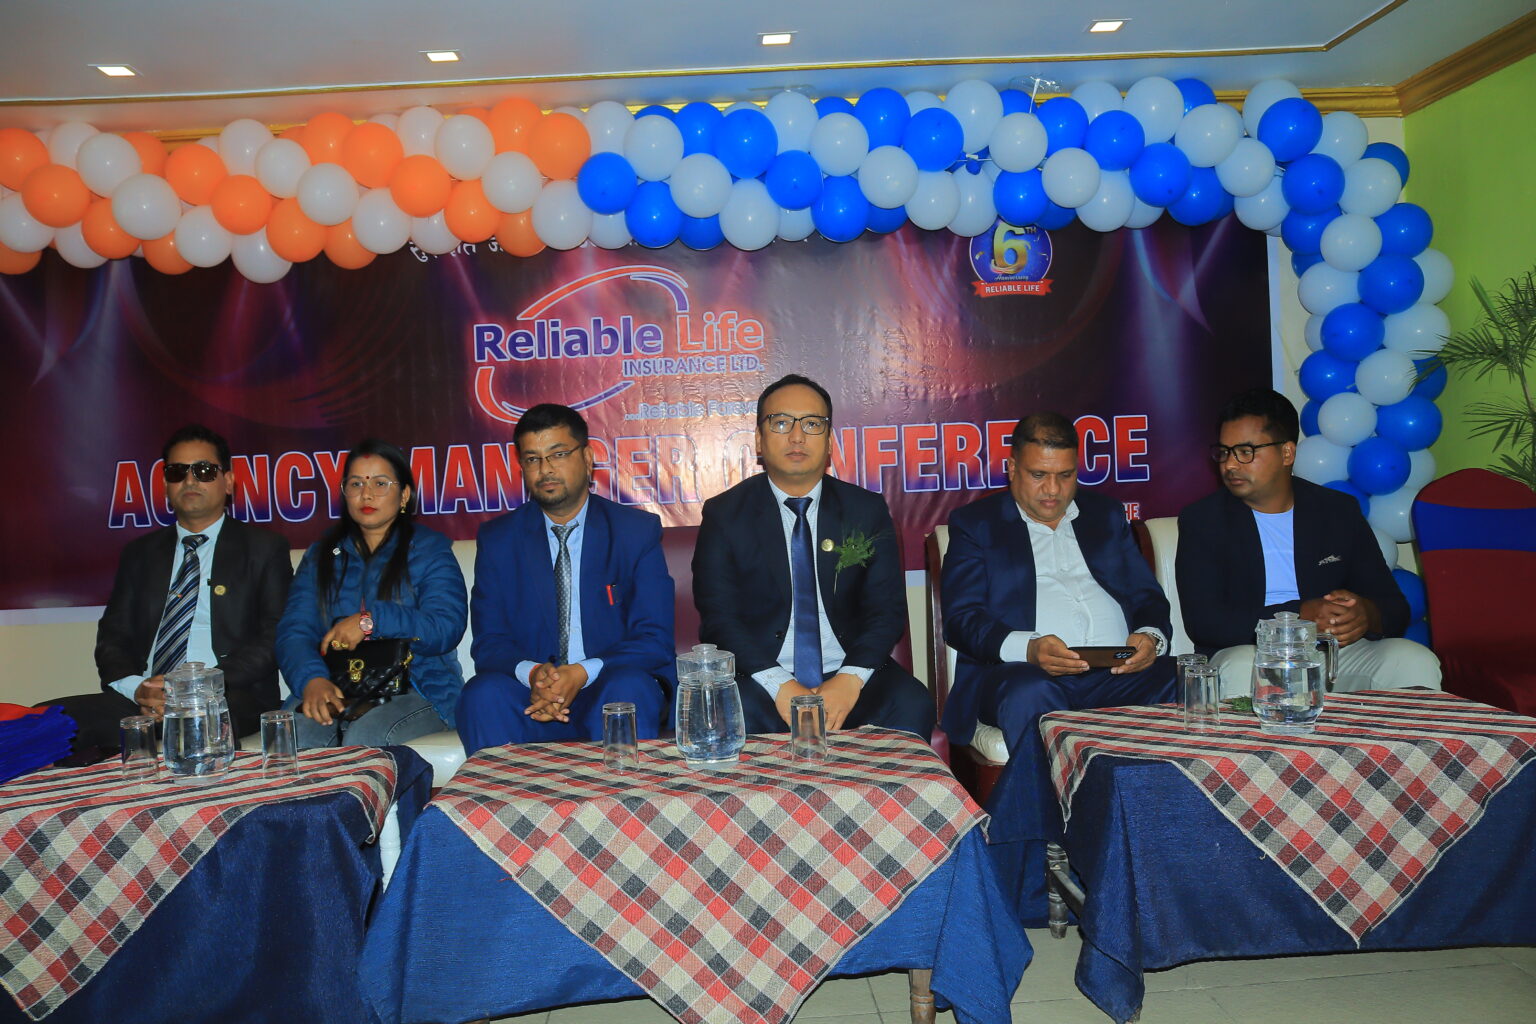 रिलायबल नेपाल लाइफद्वारा एजेन्सी म्यानेजर कन्फ्रेन्स सम्पन्न